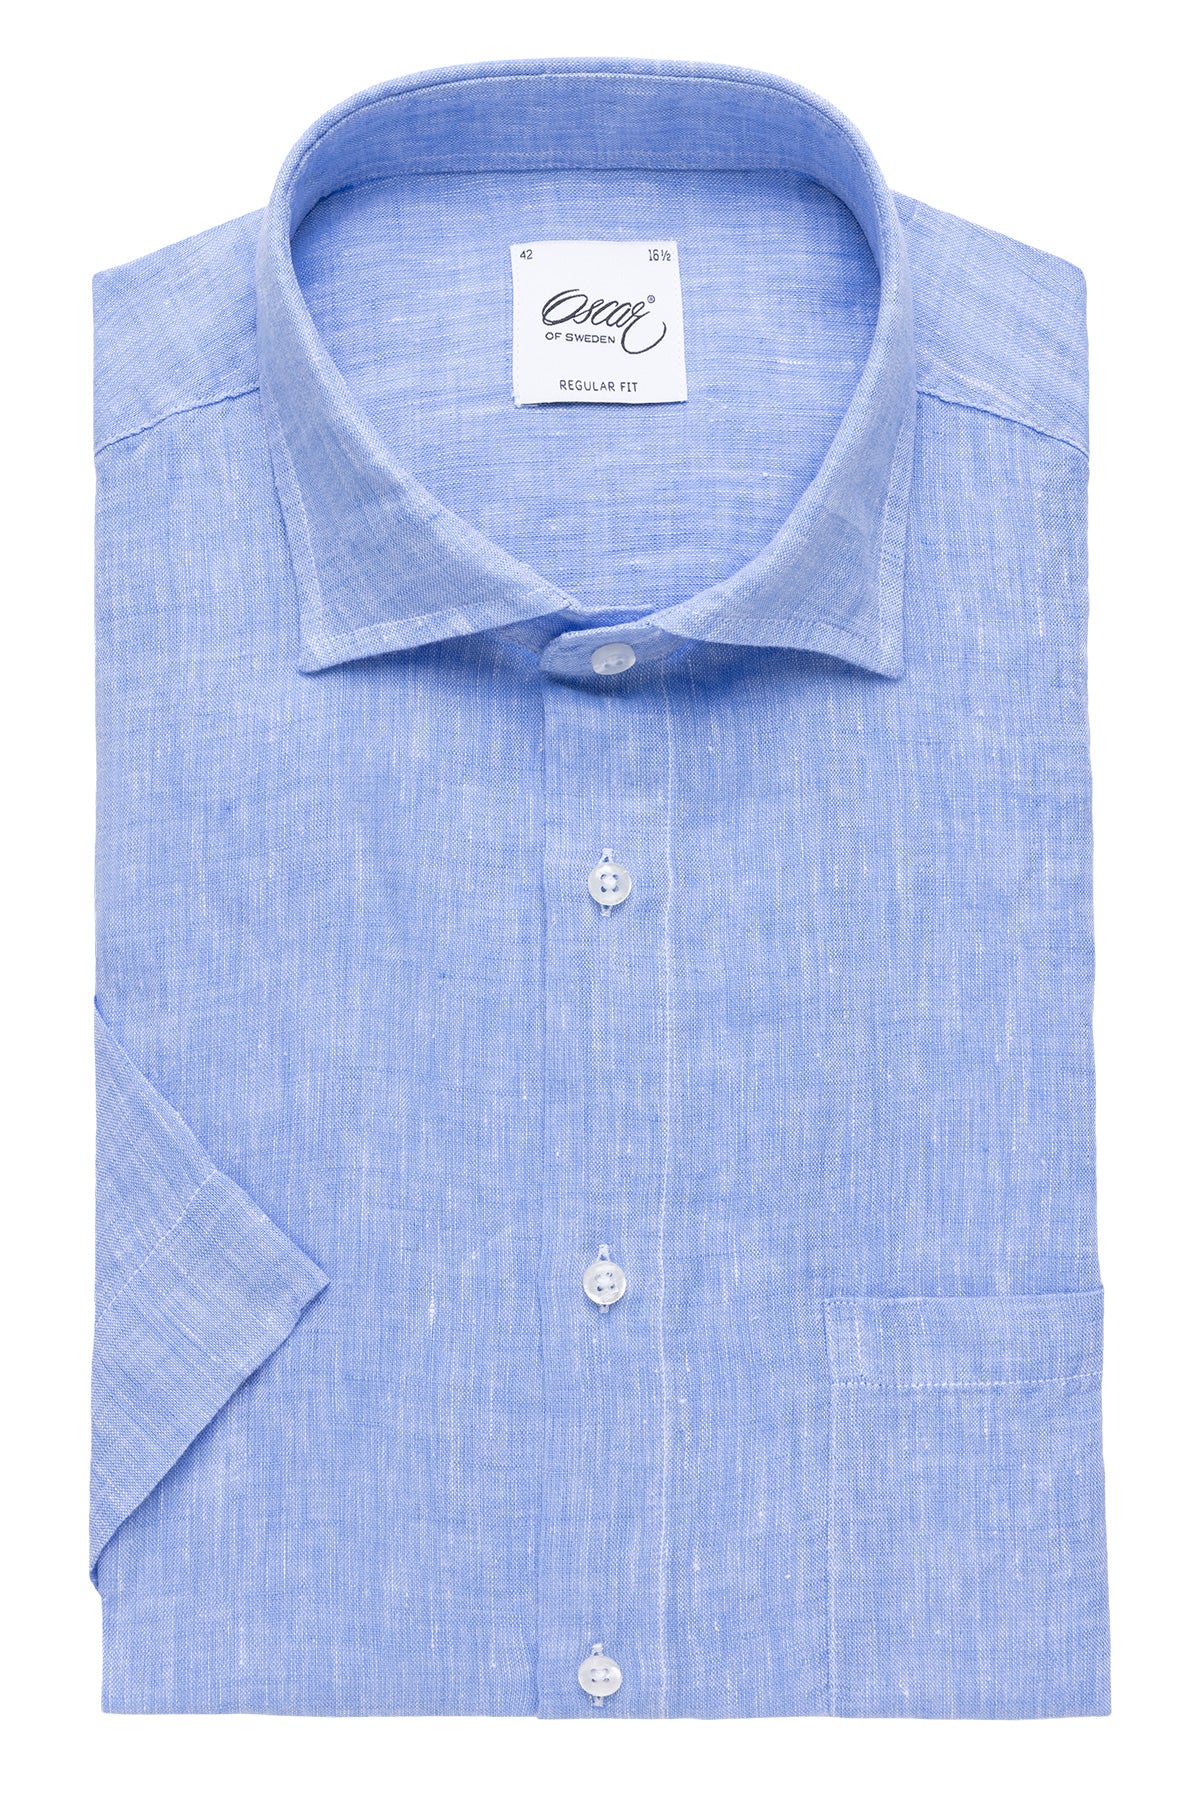 Light blue short sleeve regular fit linen shirt